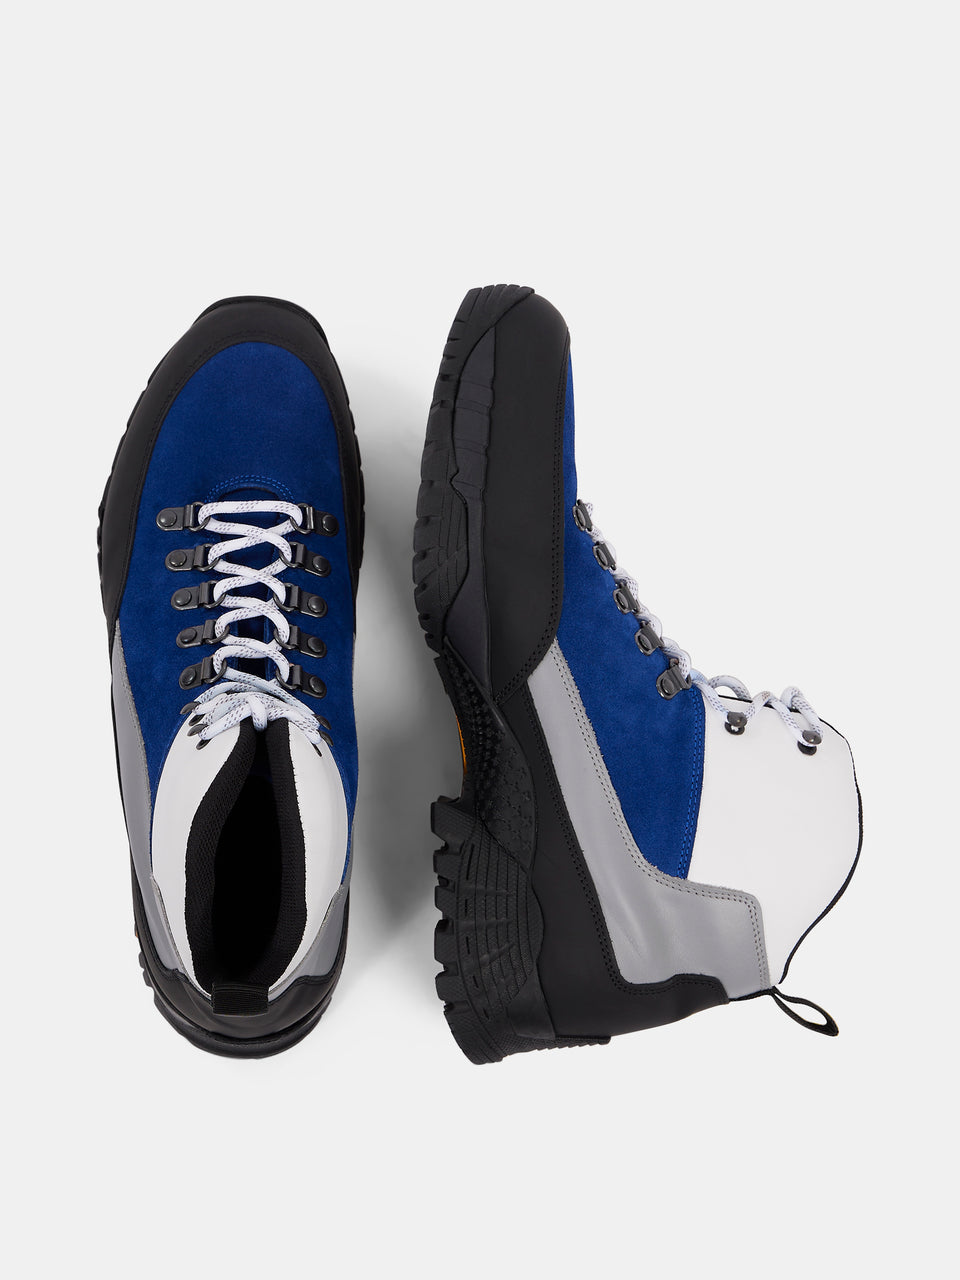 Hiker High Boots / Nautical Blue